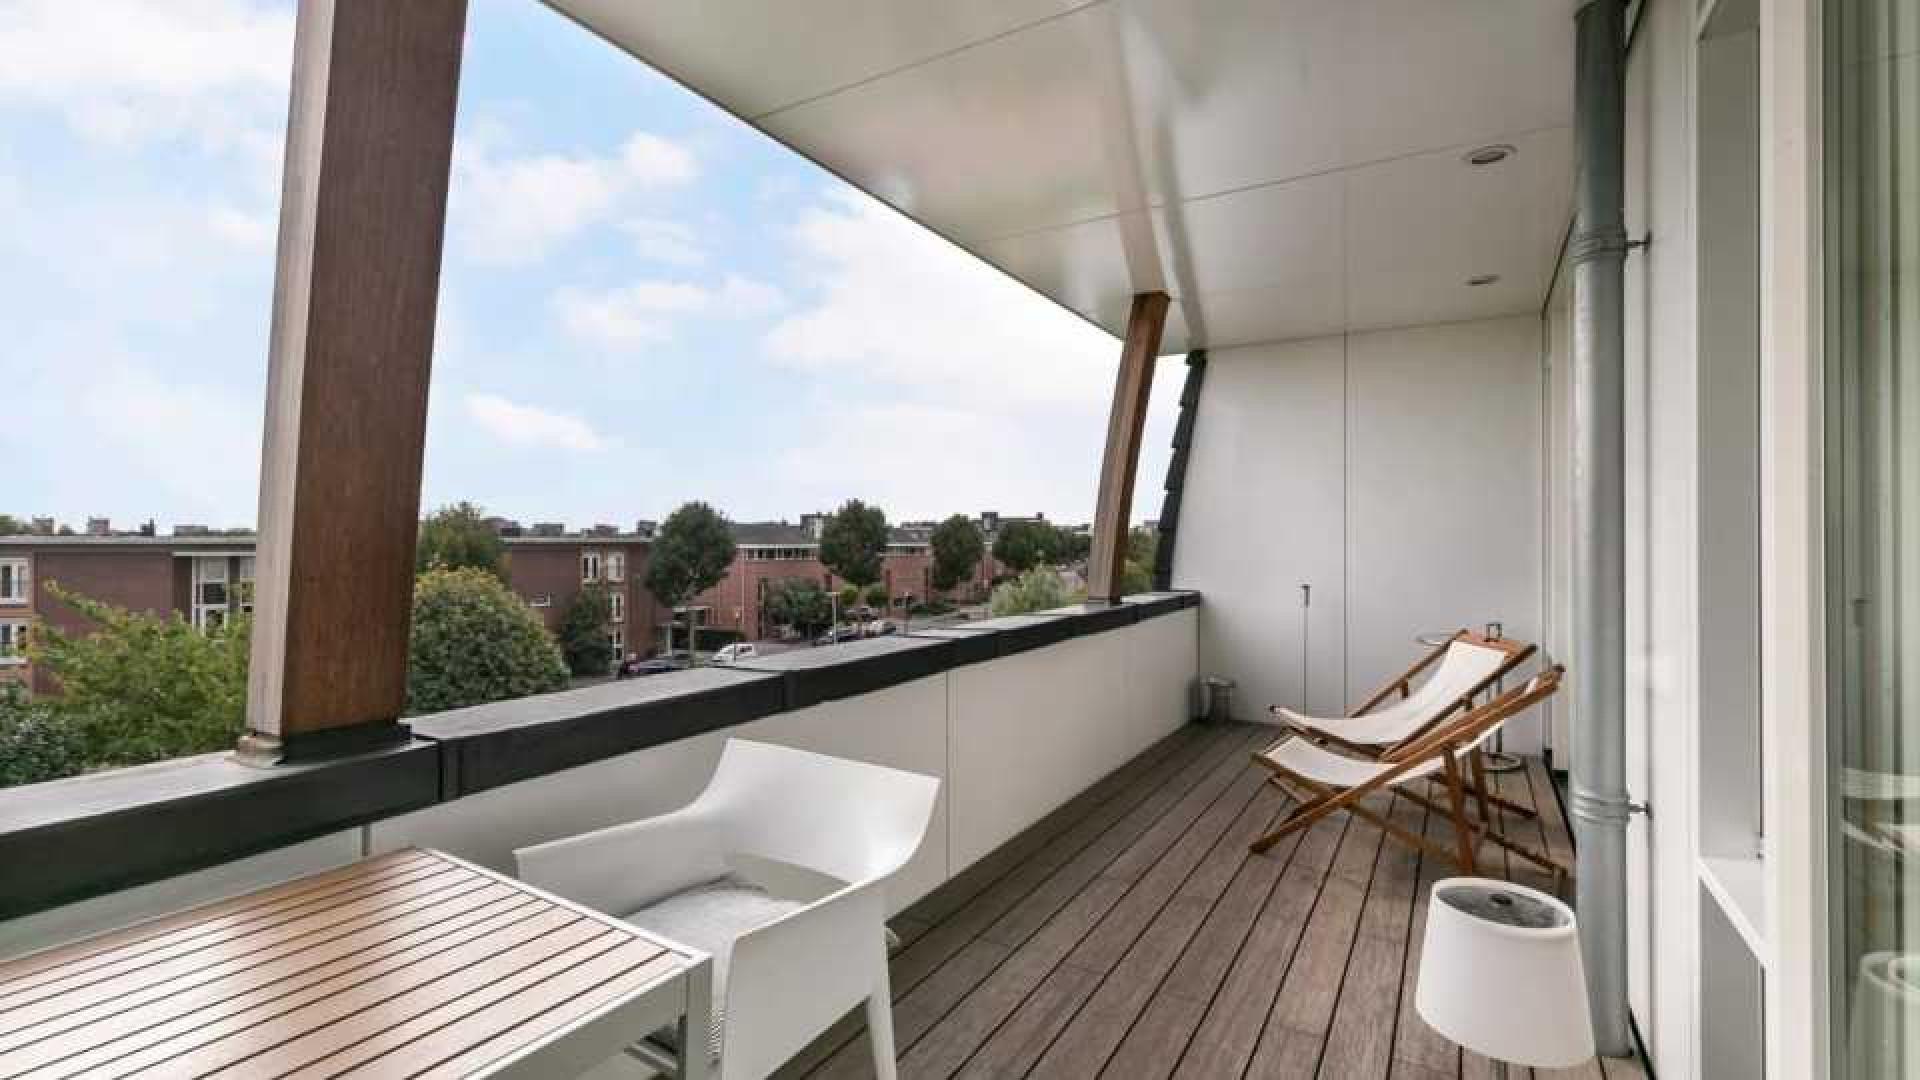 Binnenkijken in het waanzinnig luxe penthouse van Nederlands Elftal speler Denzel Dumfries. Zie foto's 17